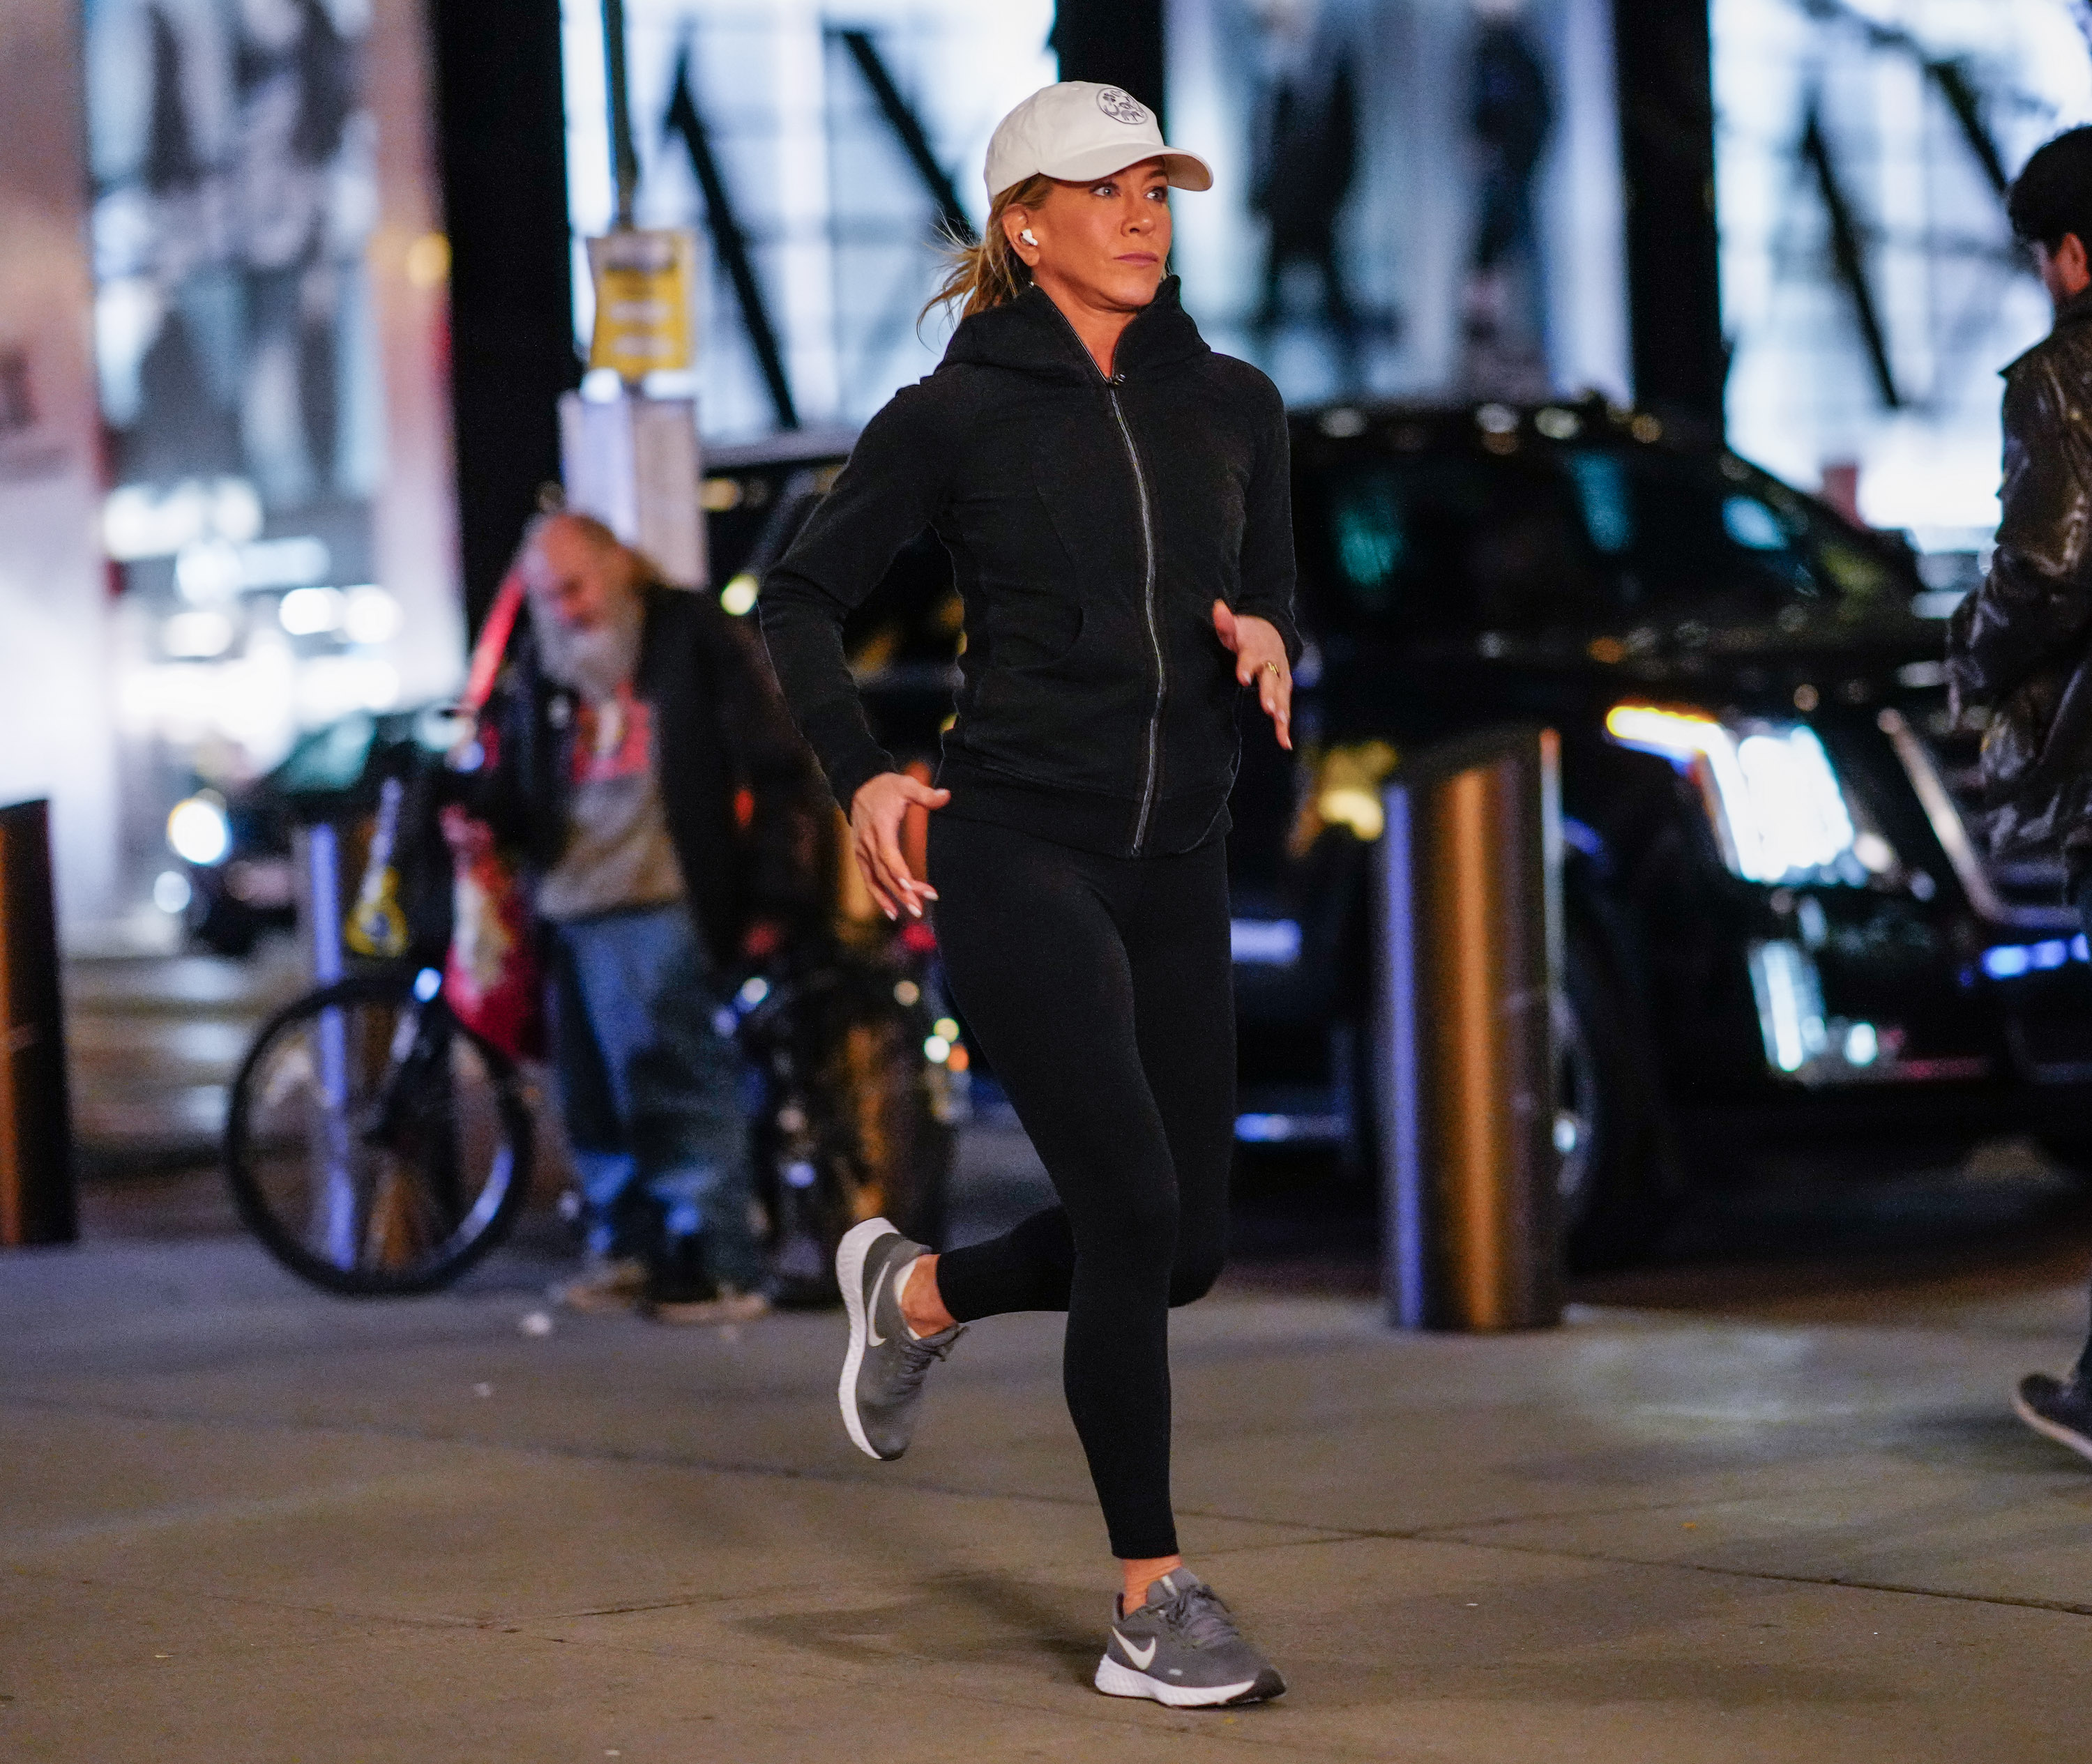 Jennifer Aniston joggt, während sie am 29. September 2022 in New York City für die "The Morning Show" dreht | Quelle: Getty Images